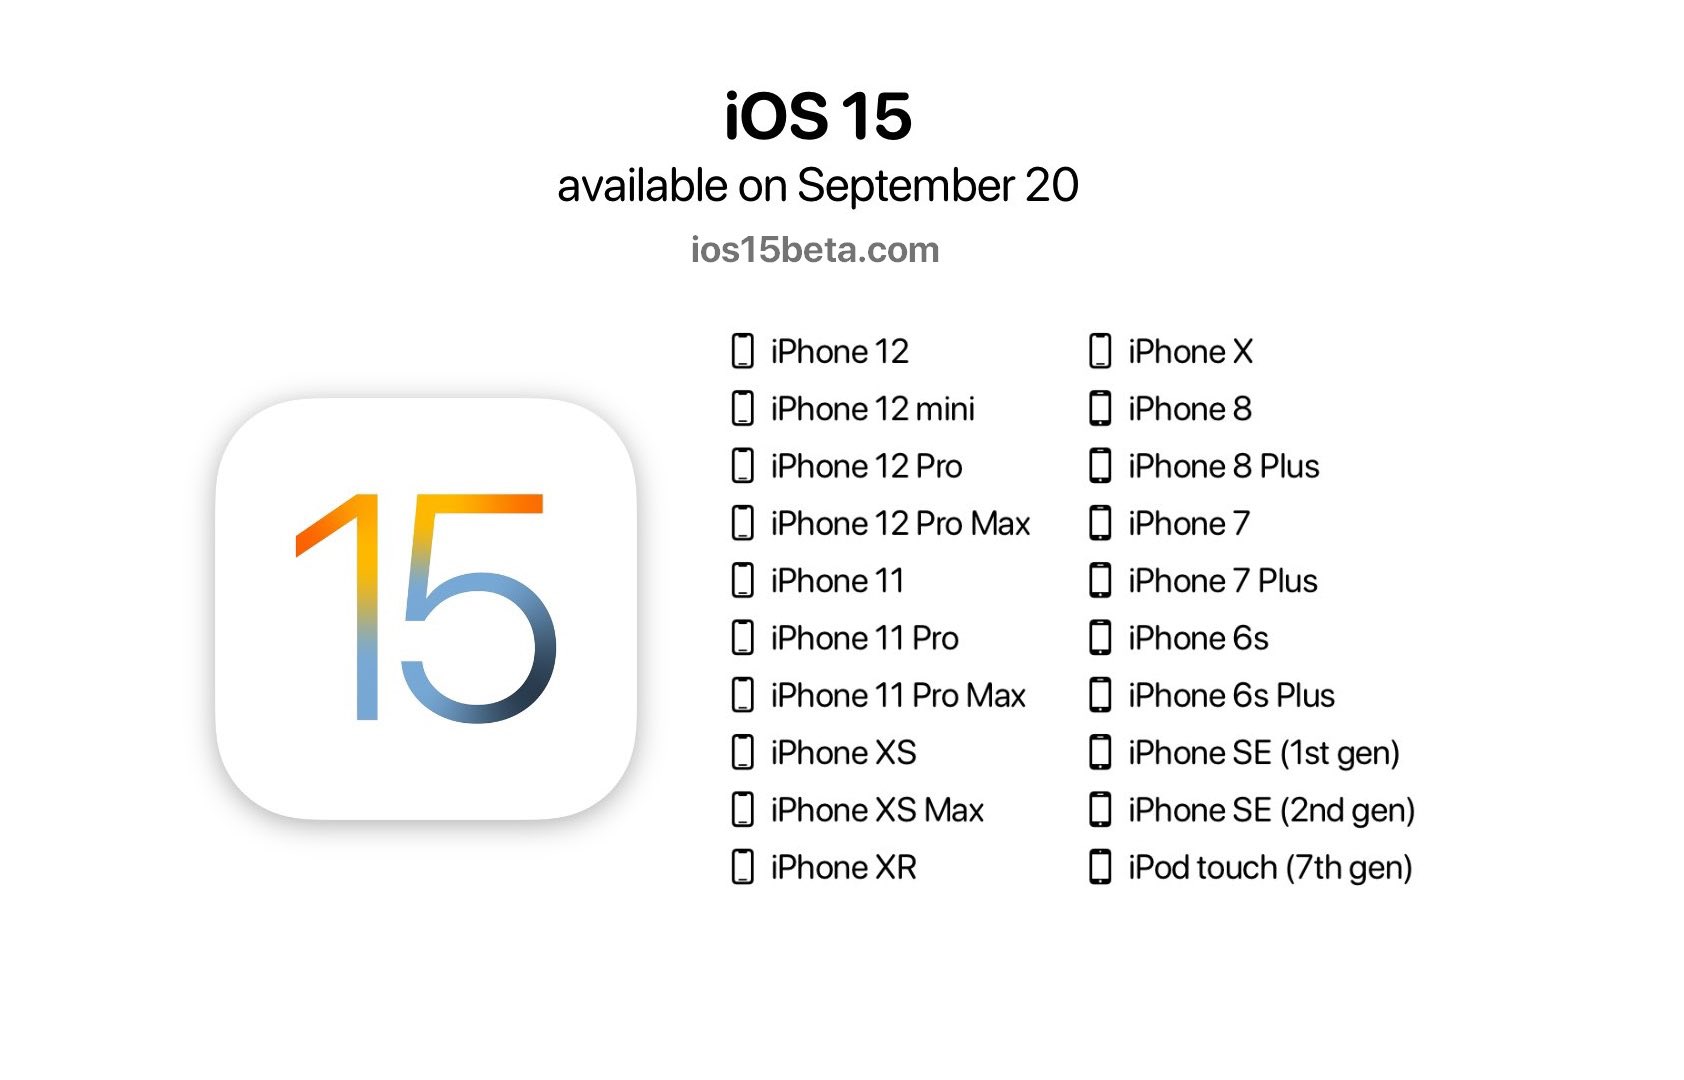 إطلاق نظام الآيفون الجديد iOS15